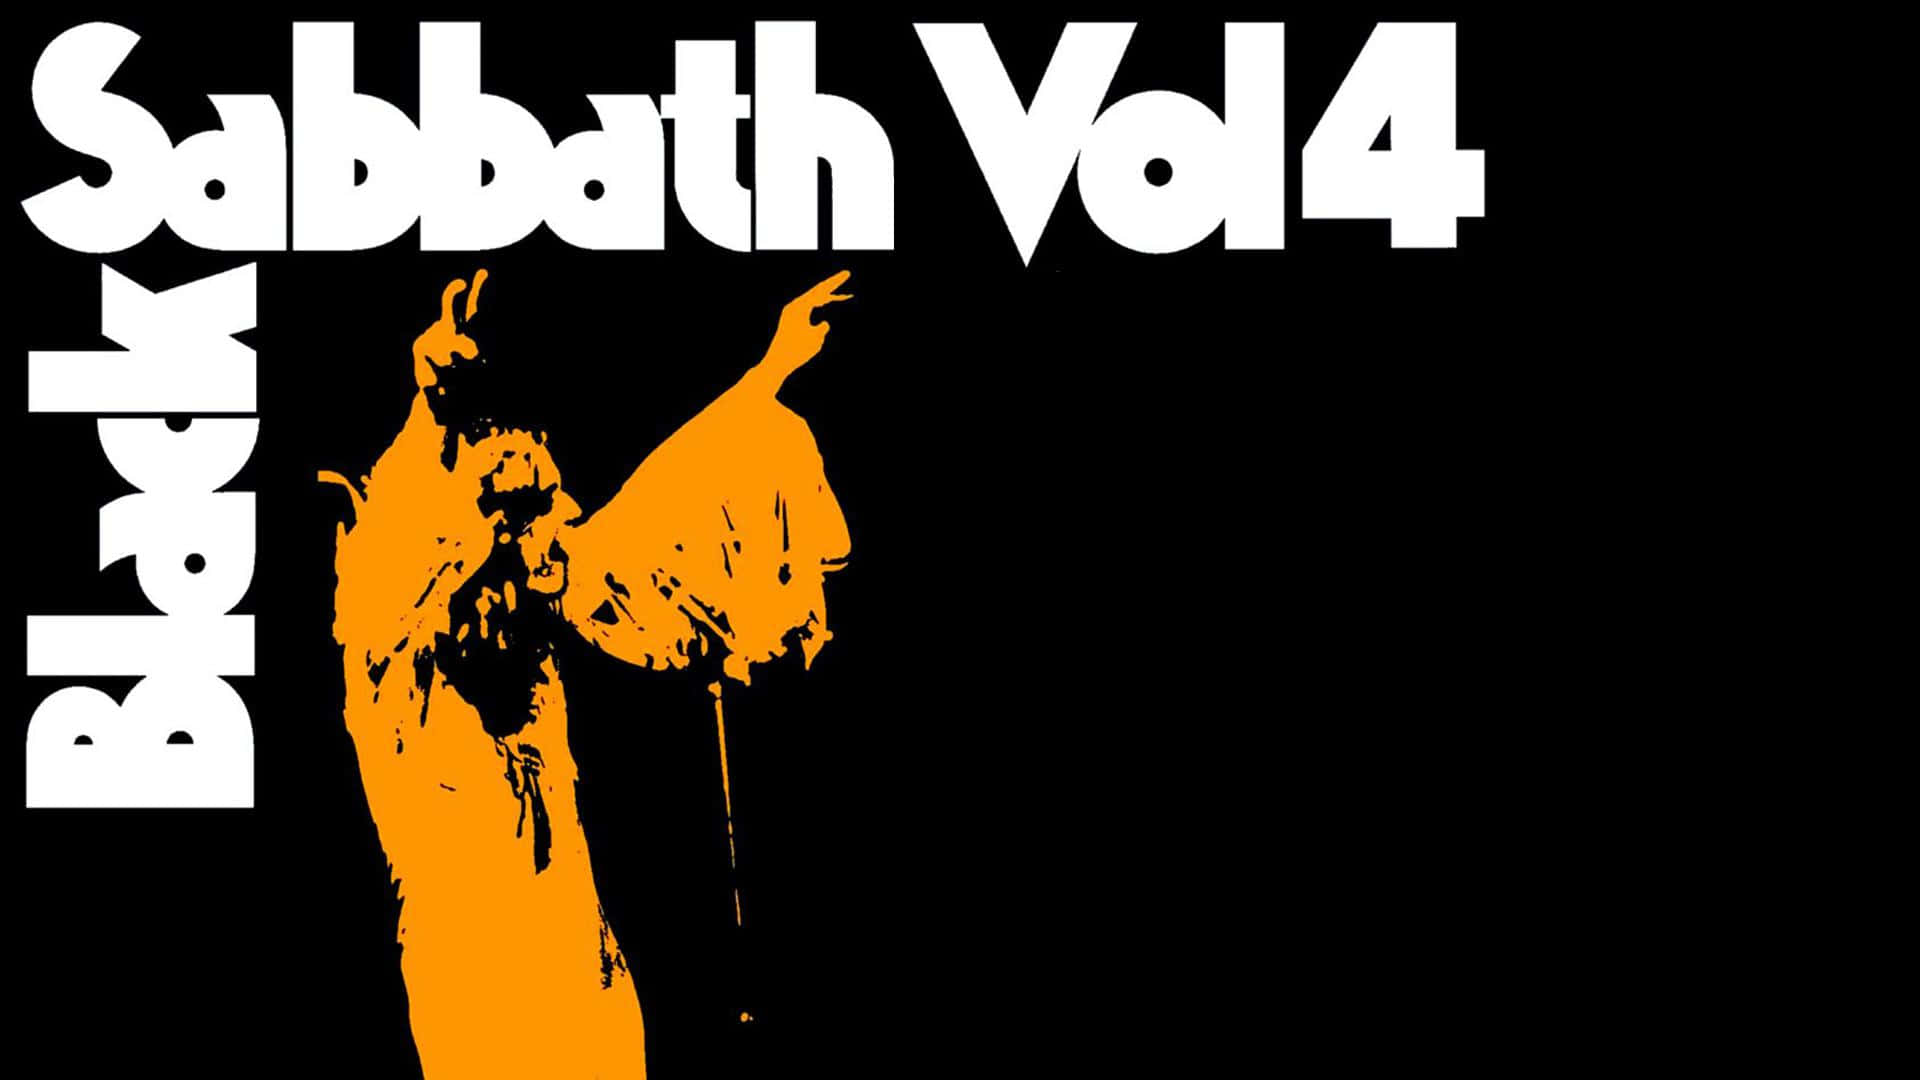 Black Sabbath Vol4 Album Cover Wallpaper